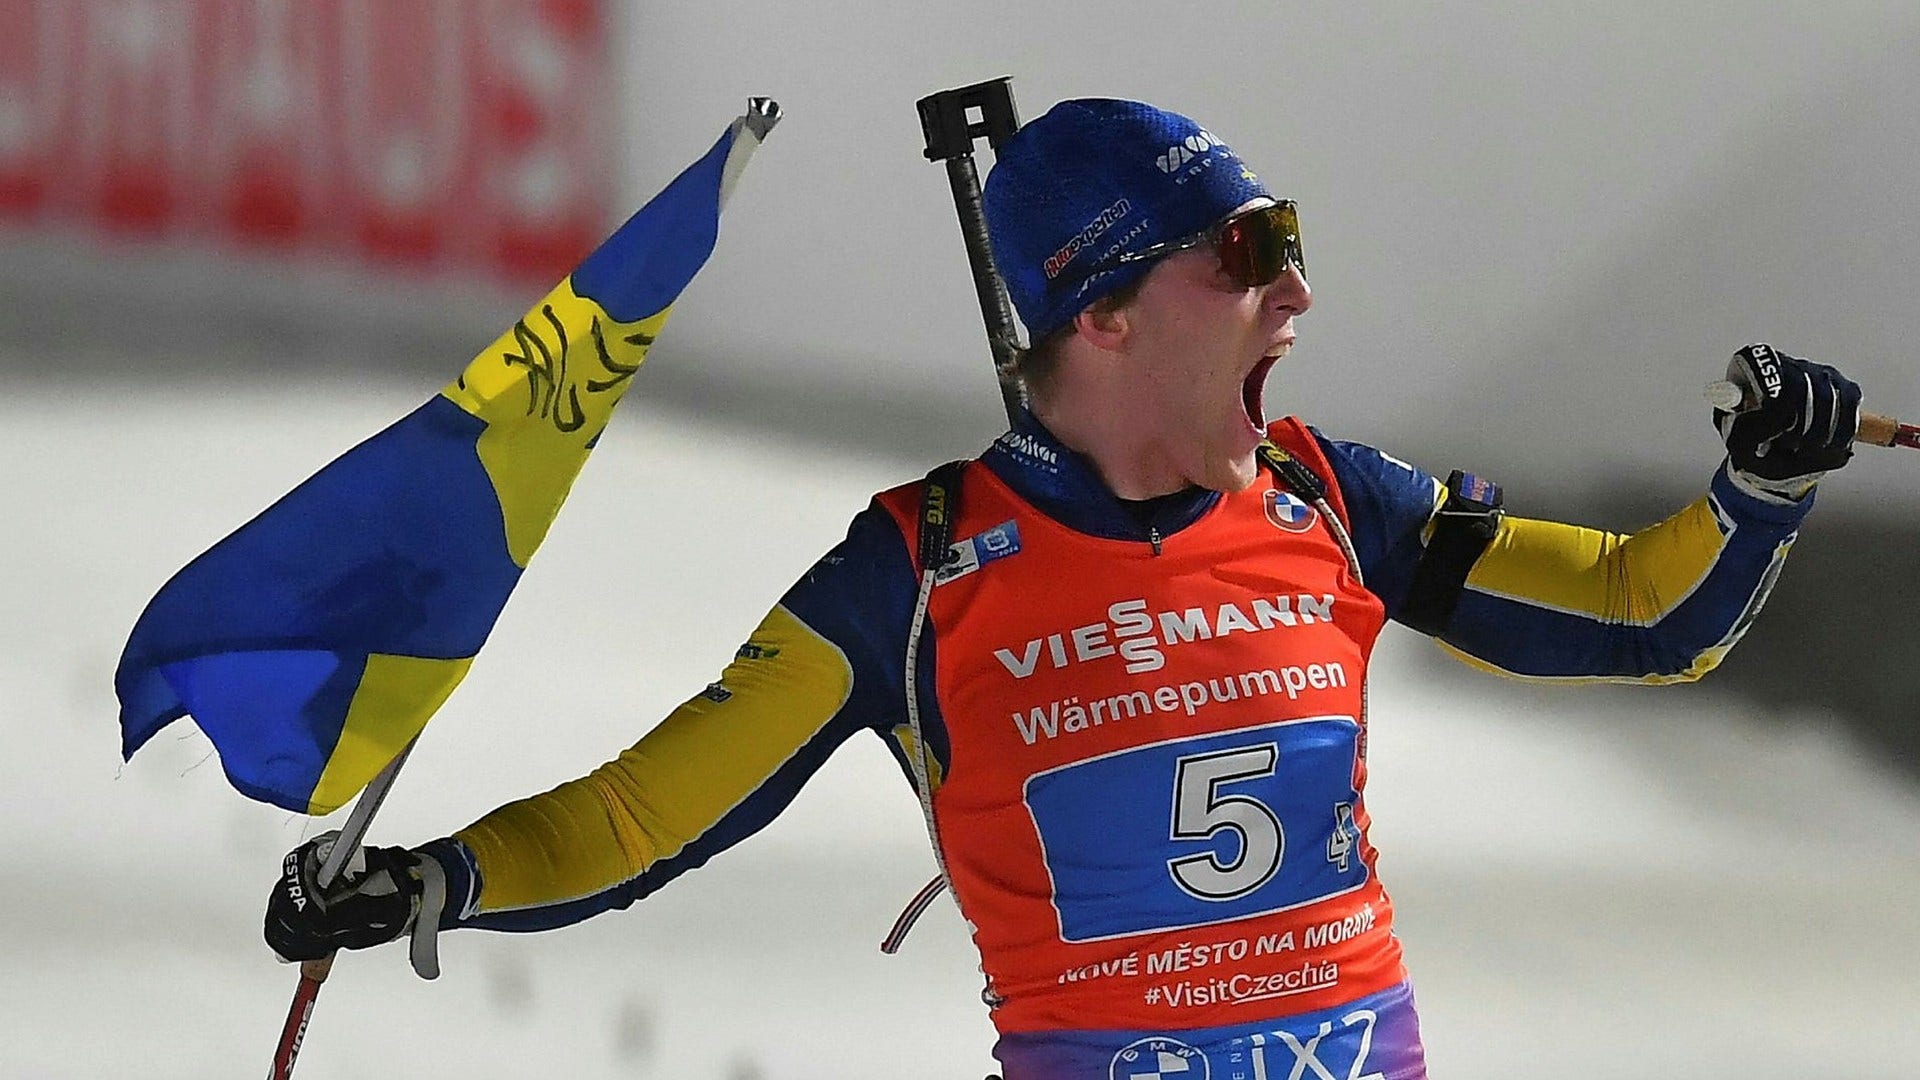 Fullt skytte i sista stående – sedan kunde Sebastian Samuelsson köra hem ett VM-guld i skidskyttestafetten i Tjeckien.